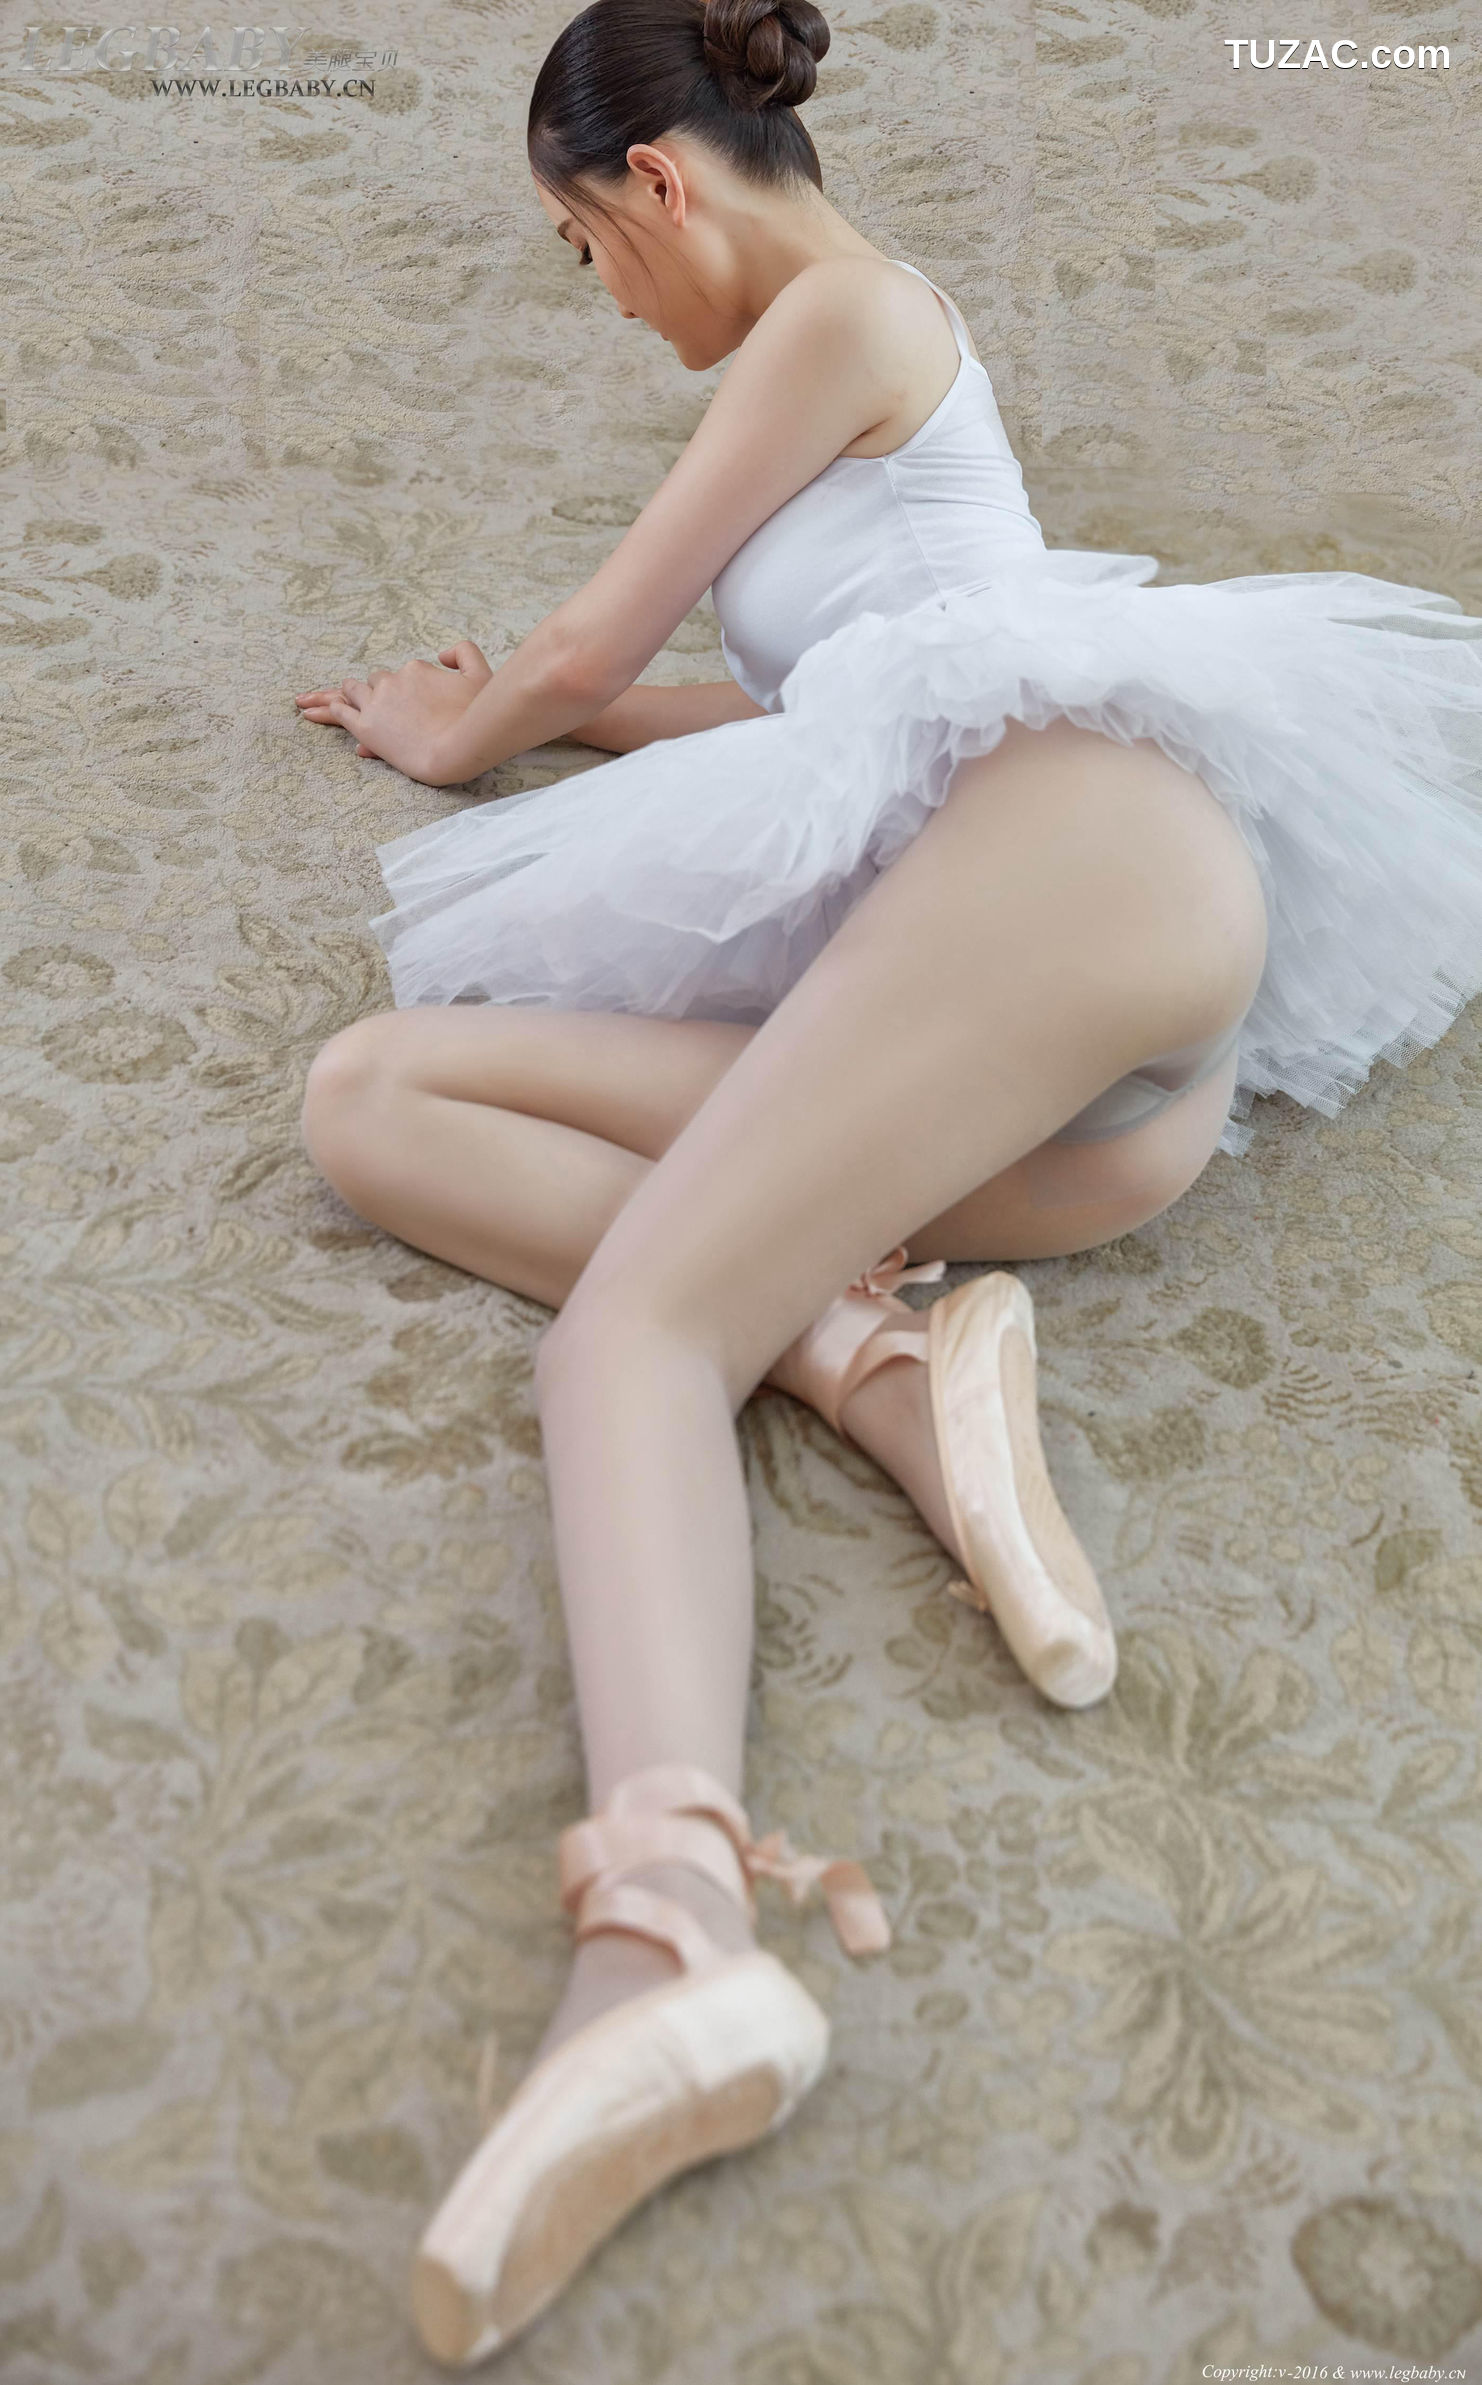 LegBaby美腿宝贝-027-潇潇-《芭蕾女孩》